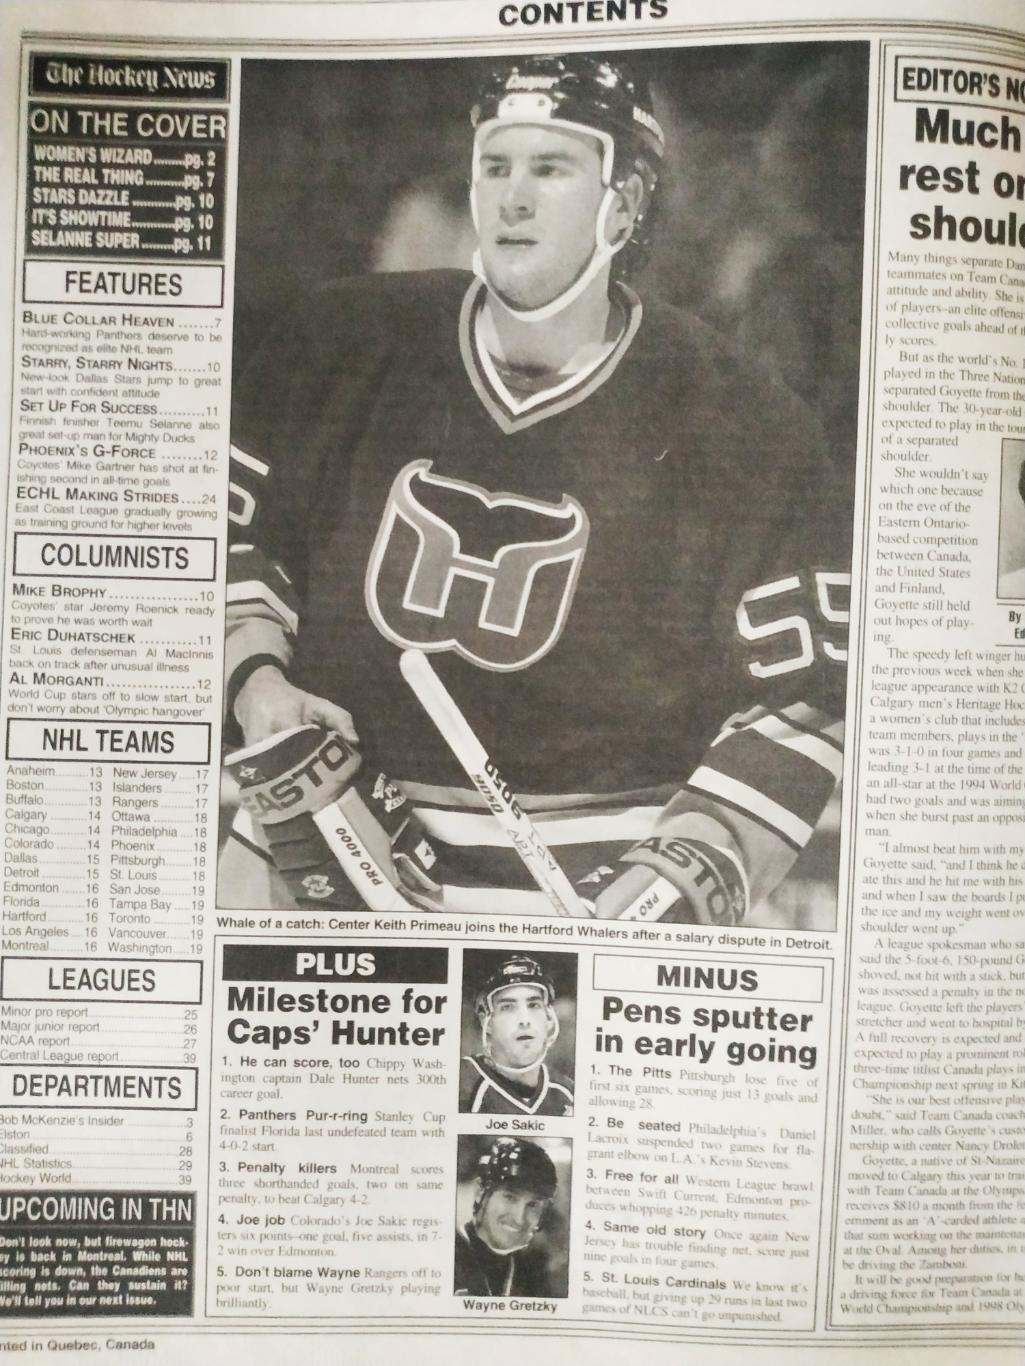 ХОККЕЙ ЖУРНАЛ ЕЖЕНЕДЕЛЬНИК НХЛ НОВОСТИ ХОККЕЯ NHL NOV.1 1996 THE HOCKEY NEWS 1